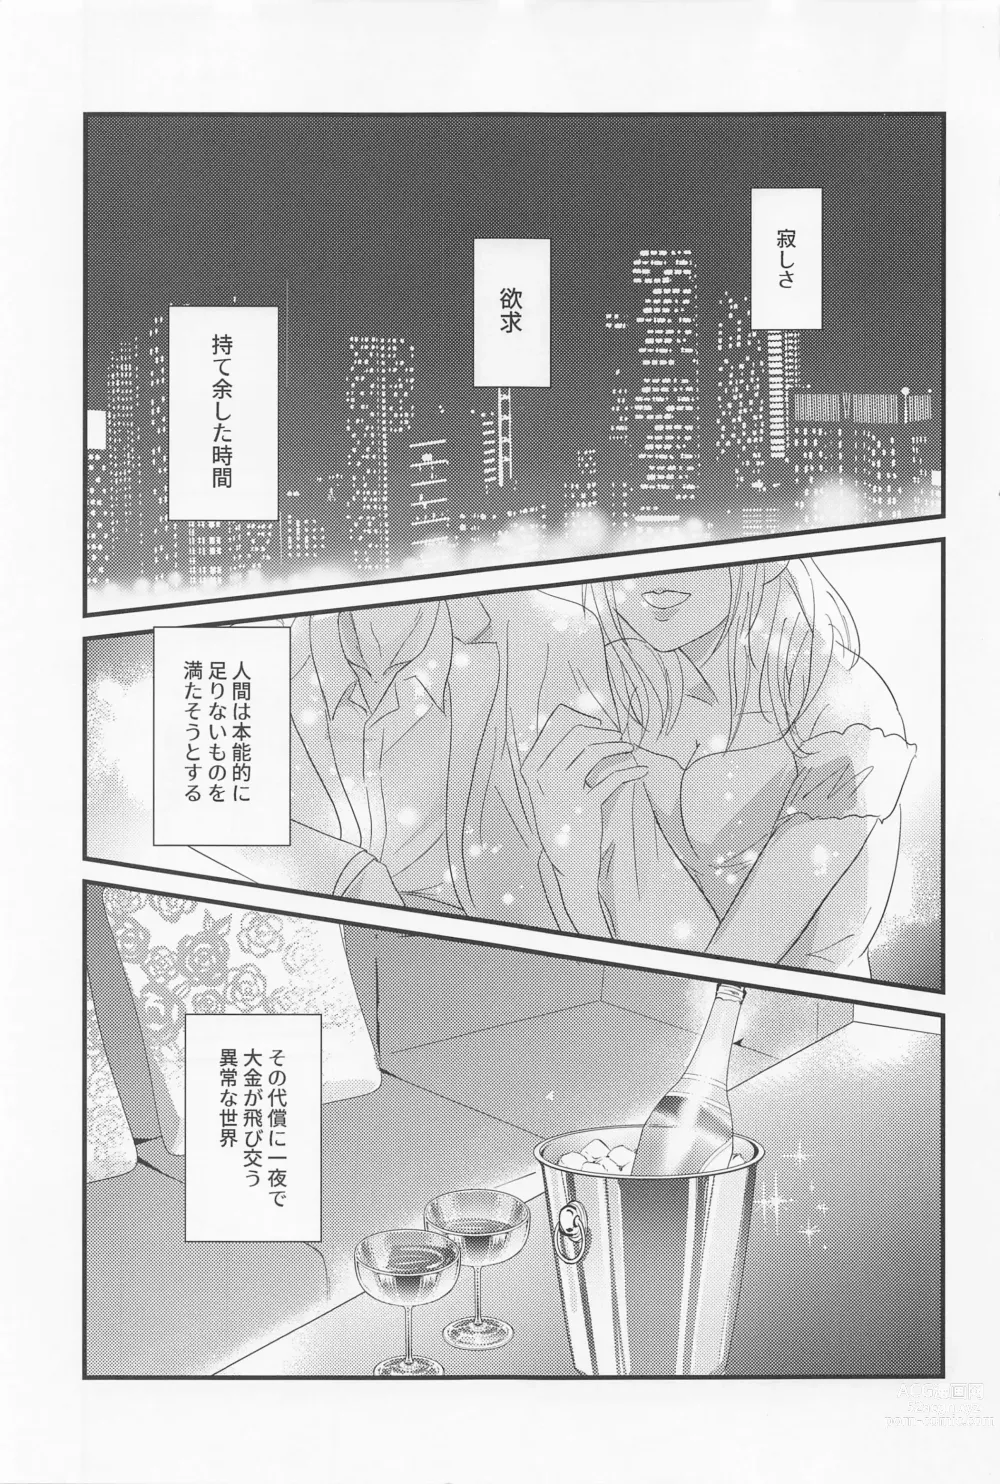 Page 2 of doujinshi Eikyuu Shimei